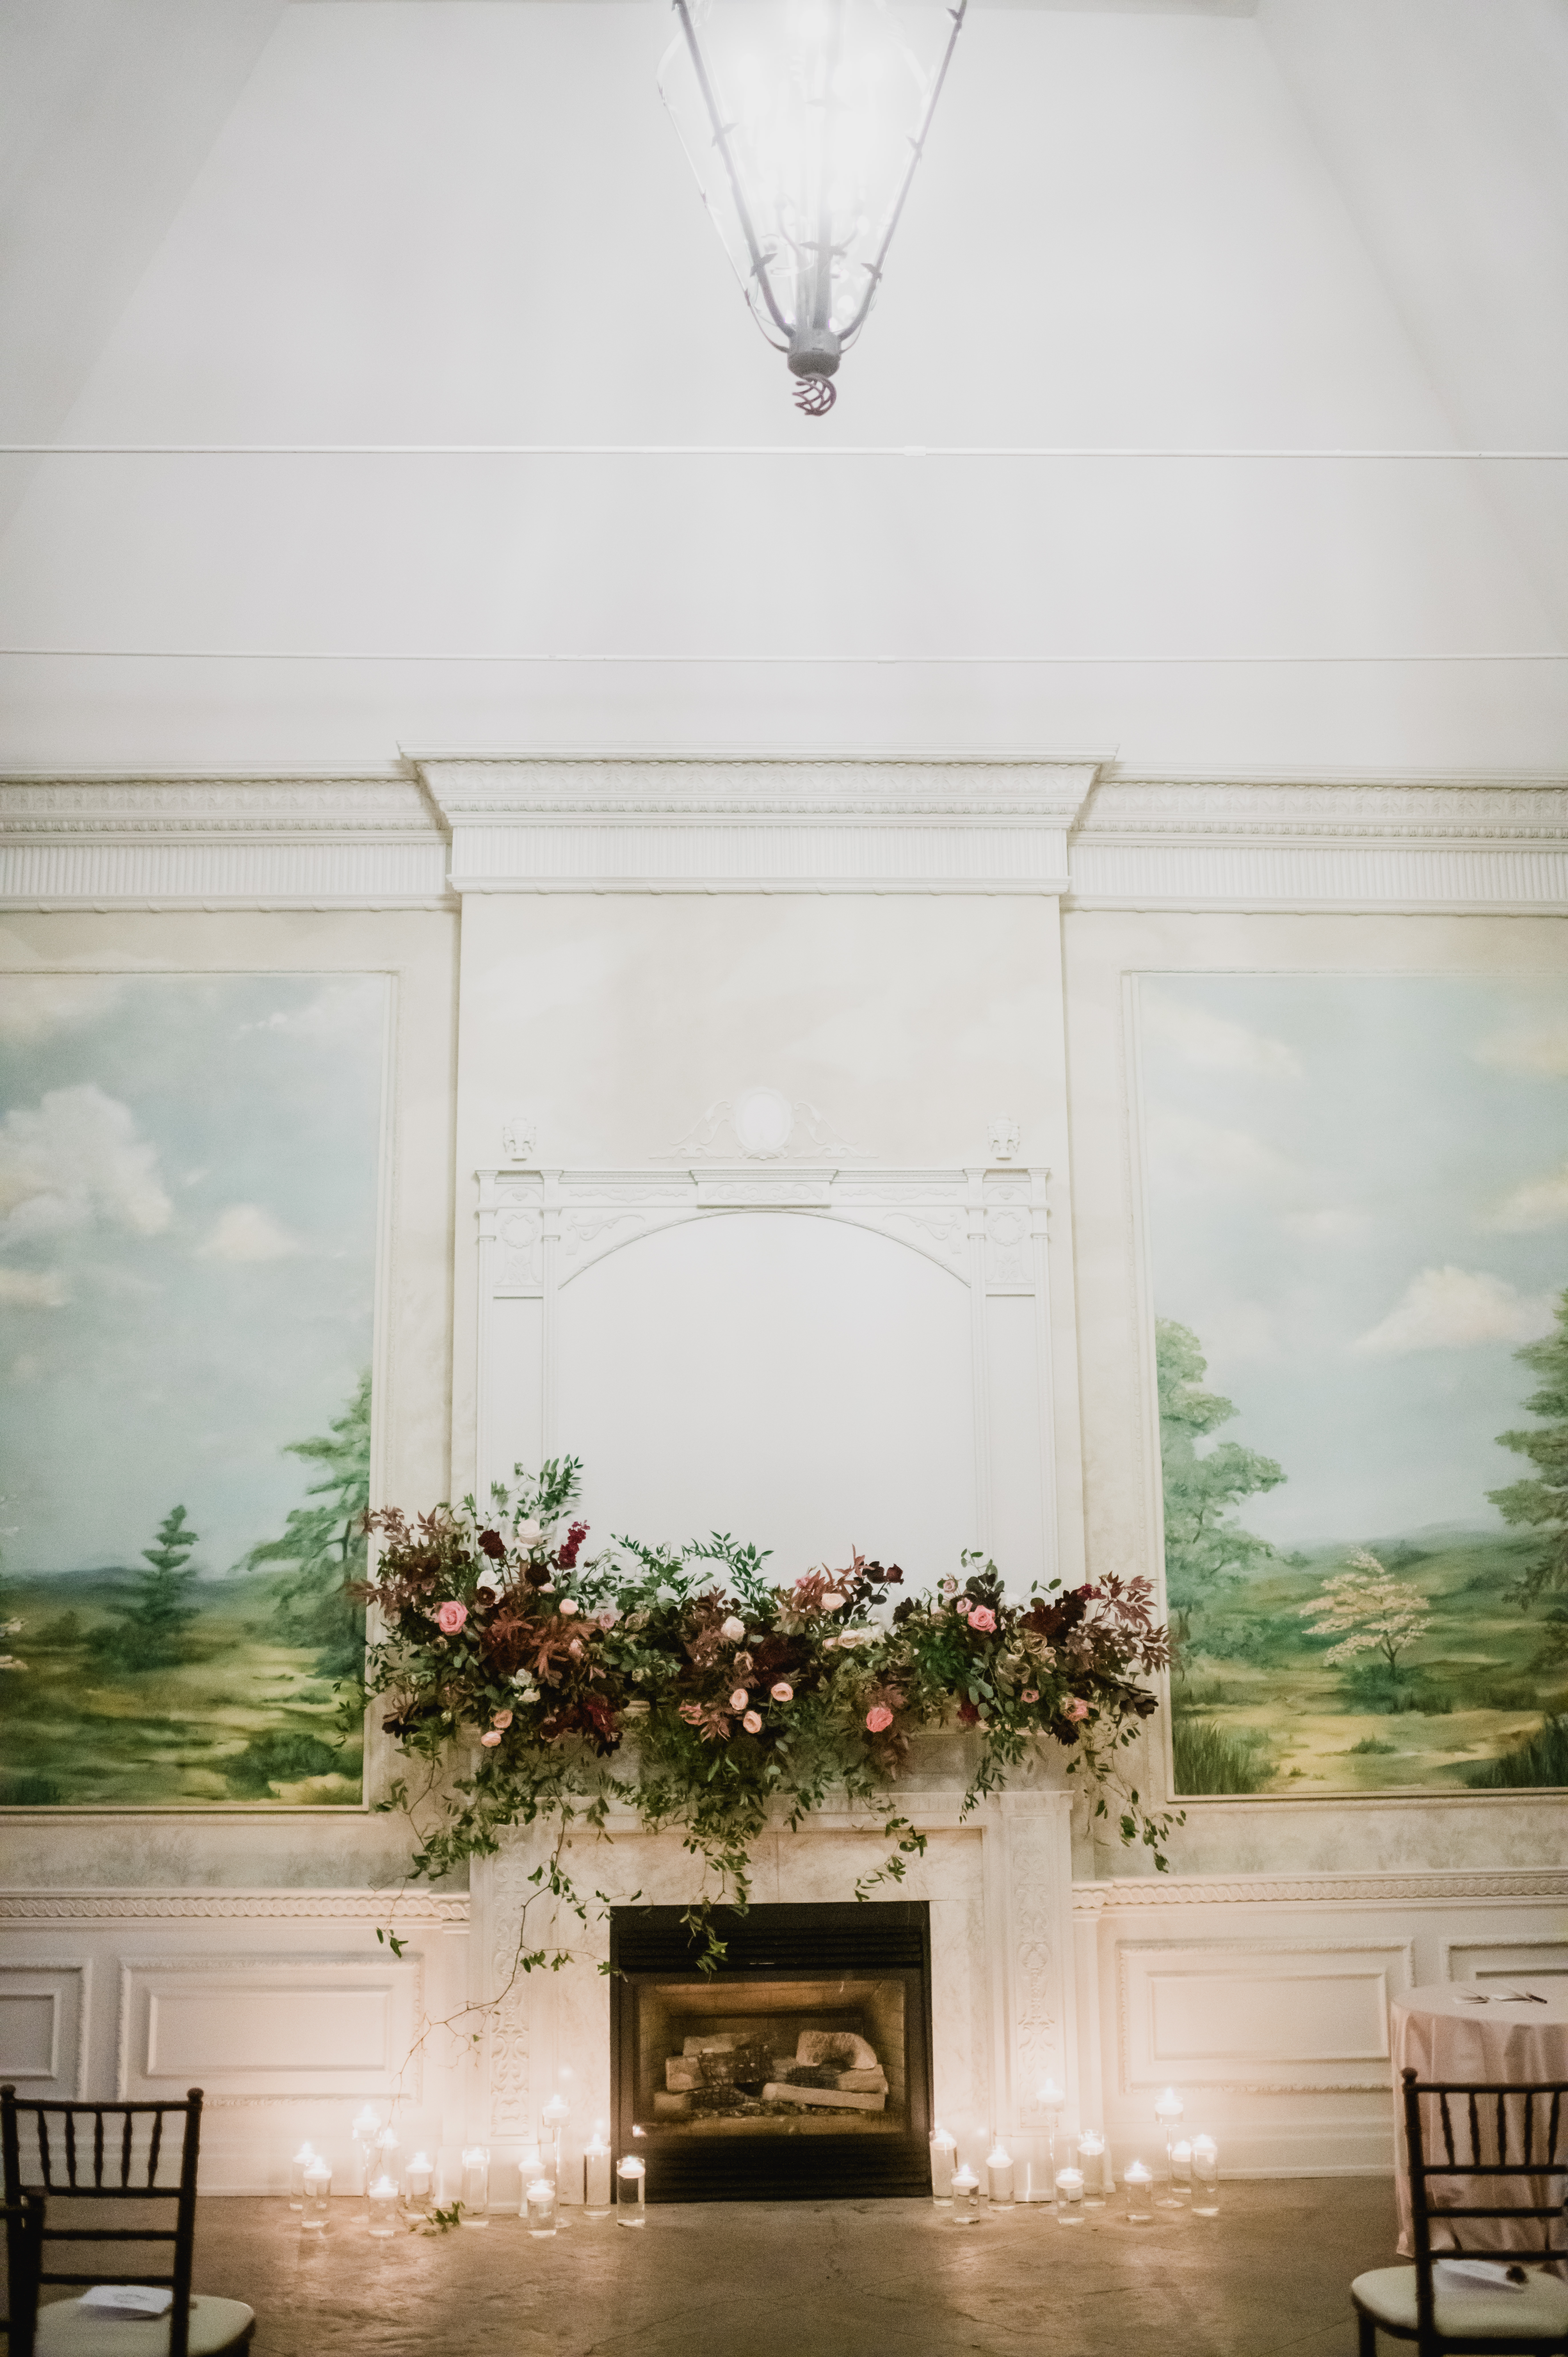 Florals decorate a mantel in a Toronto wedding venue